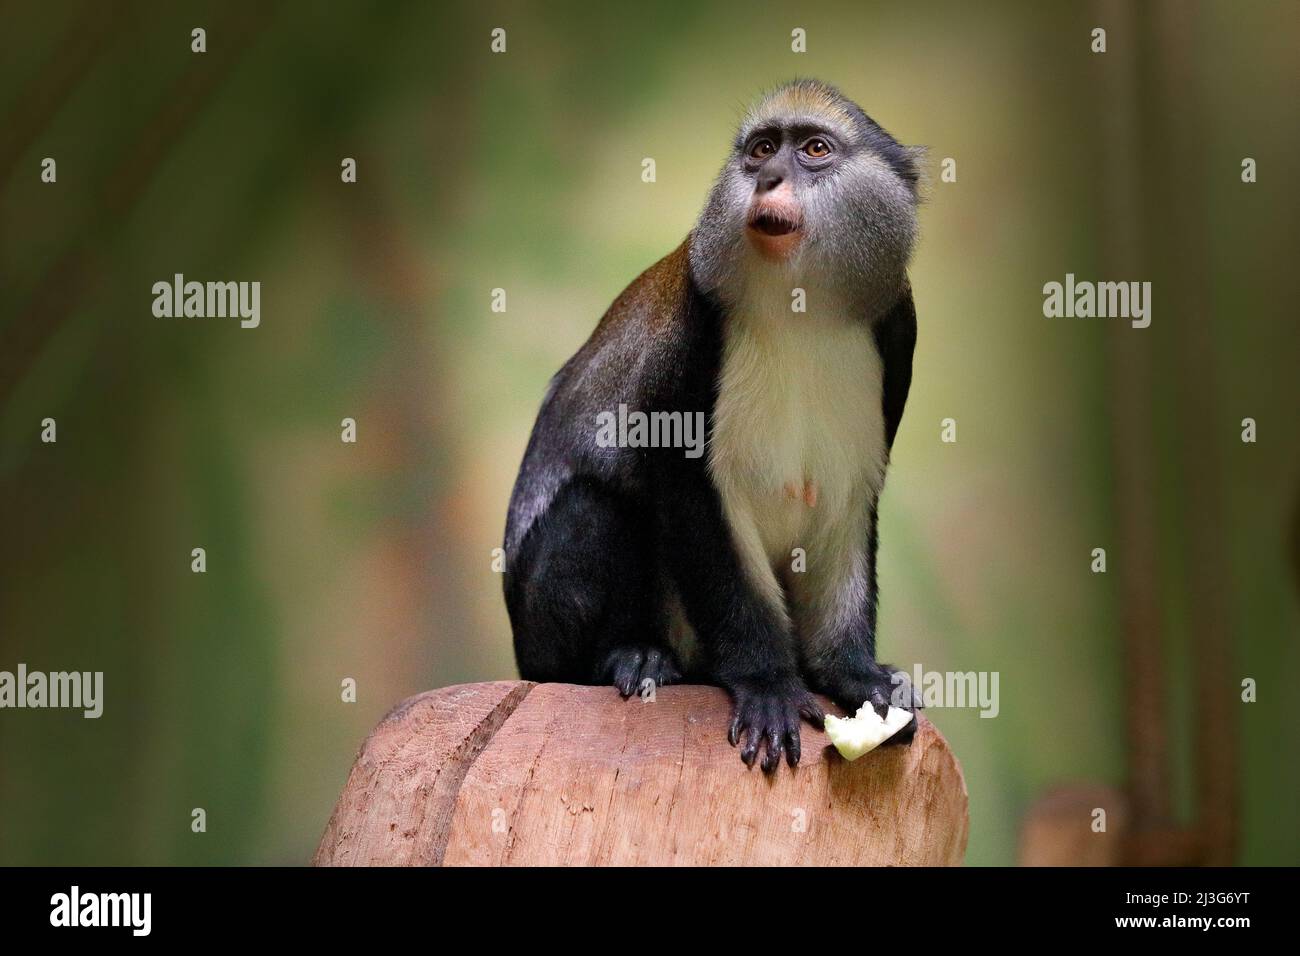 Campbells mona-Affe oder Campbells Guenon-Affe, Cercopithecus campbelli, in einem natürlichen Lebensraum. Tierwald. Primas aus der Elfenbeinküste, Gambia, Ghan Stockfoto